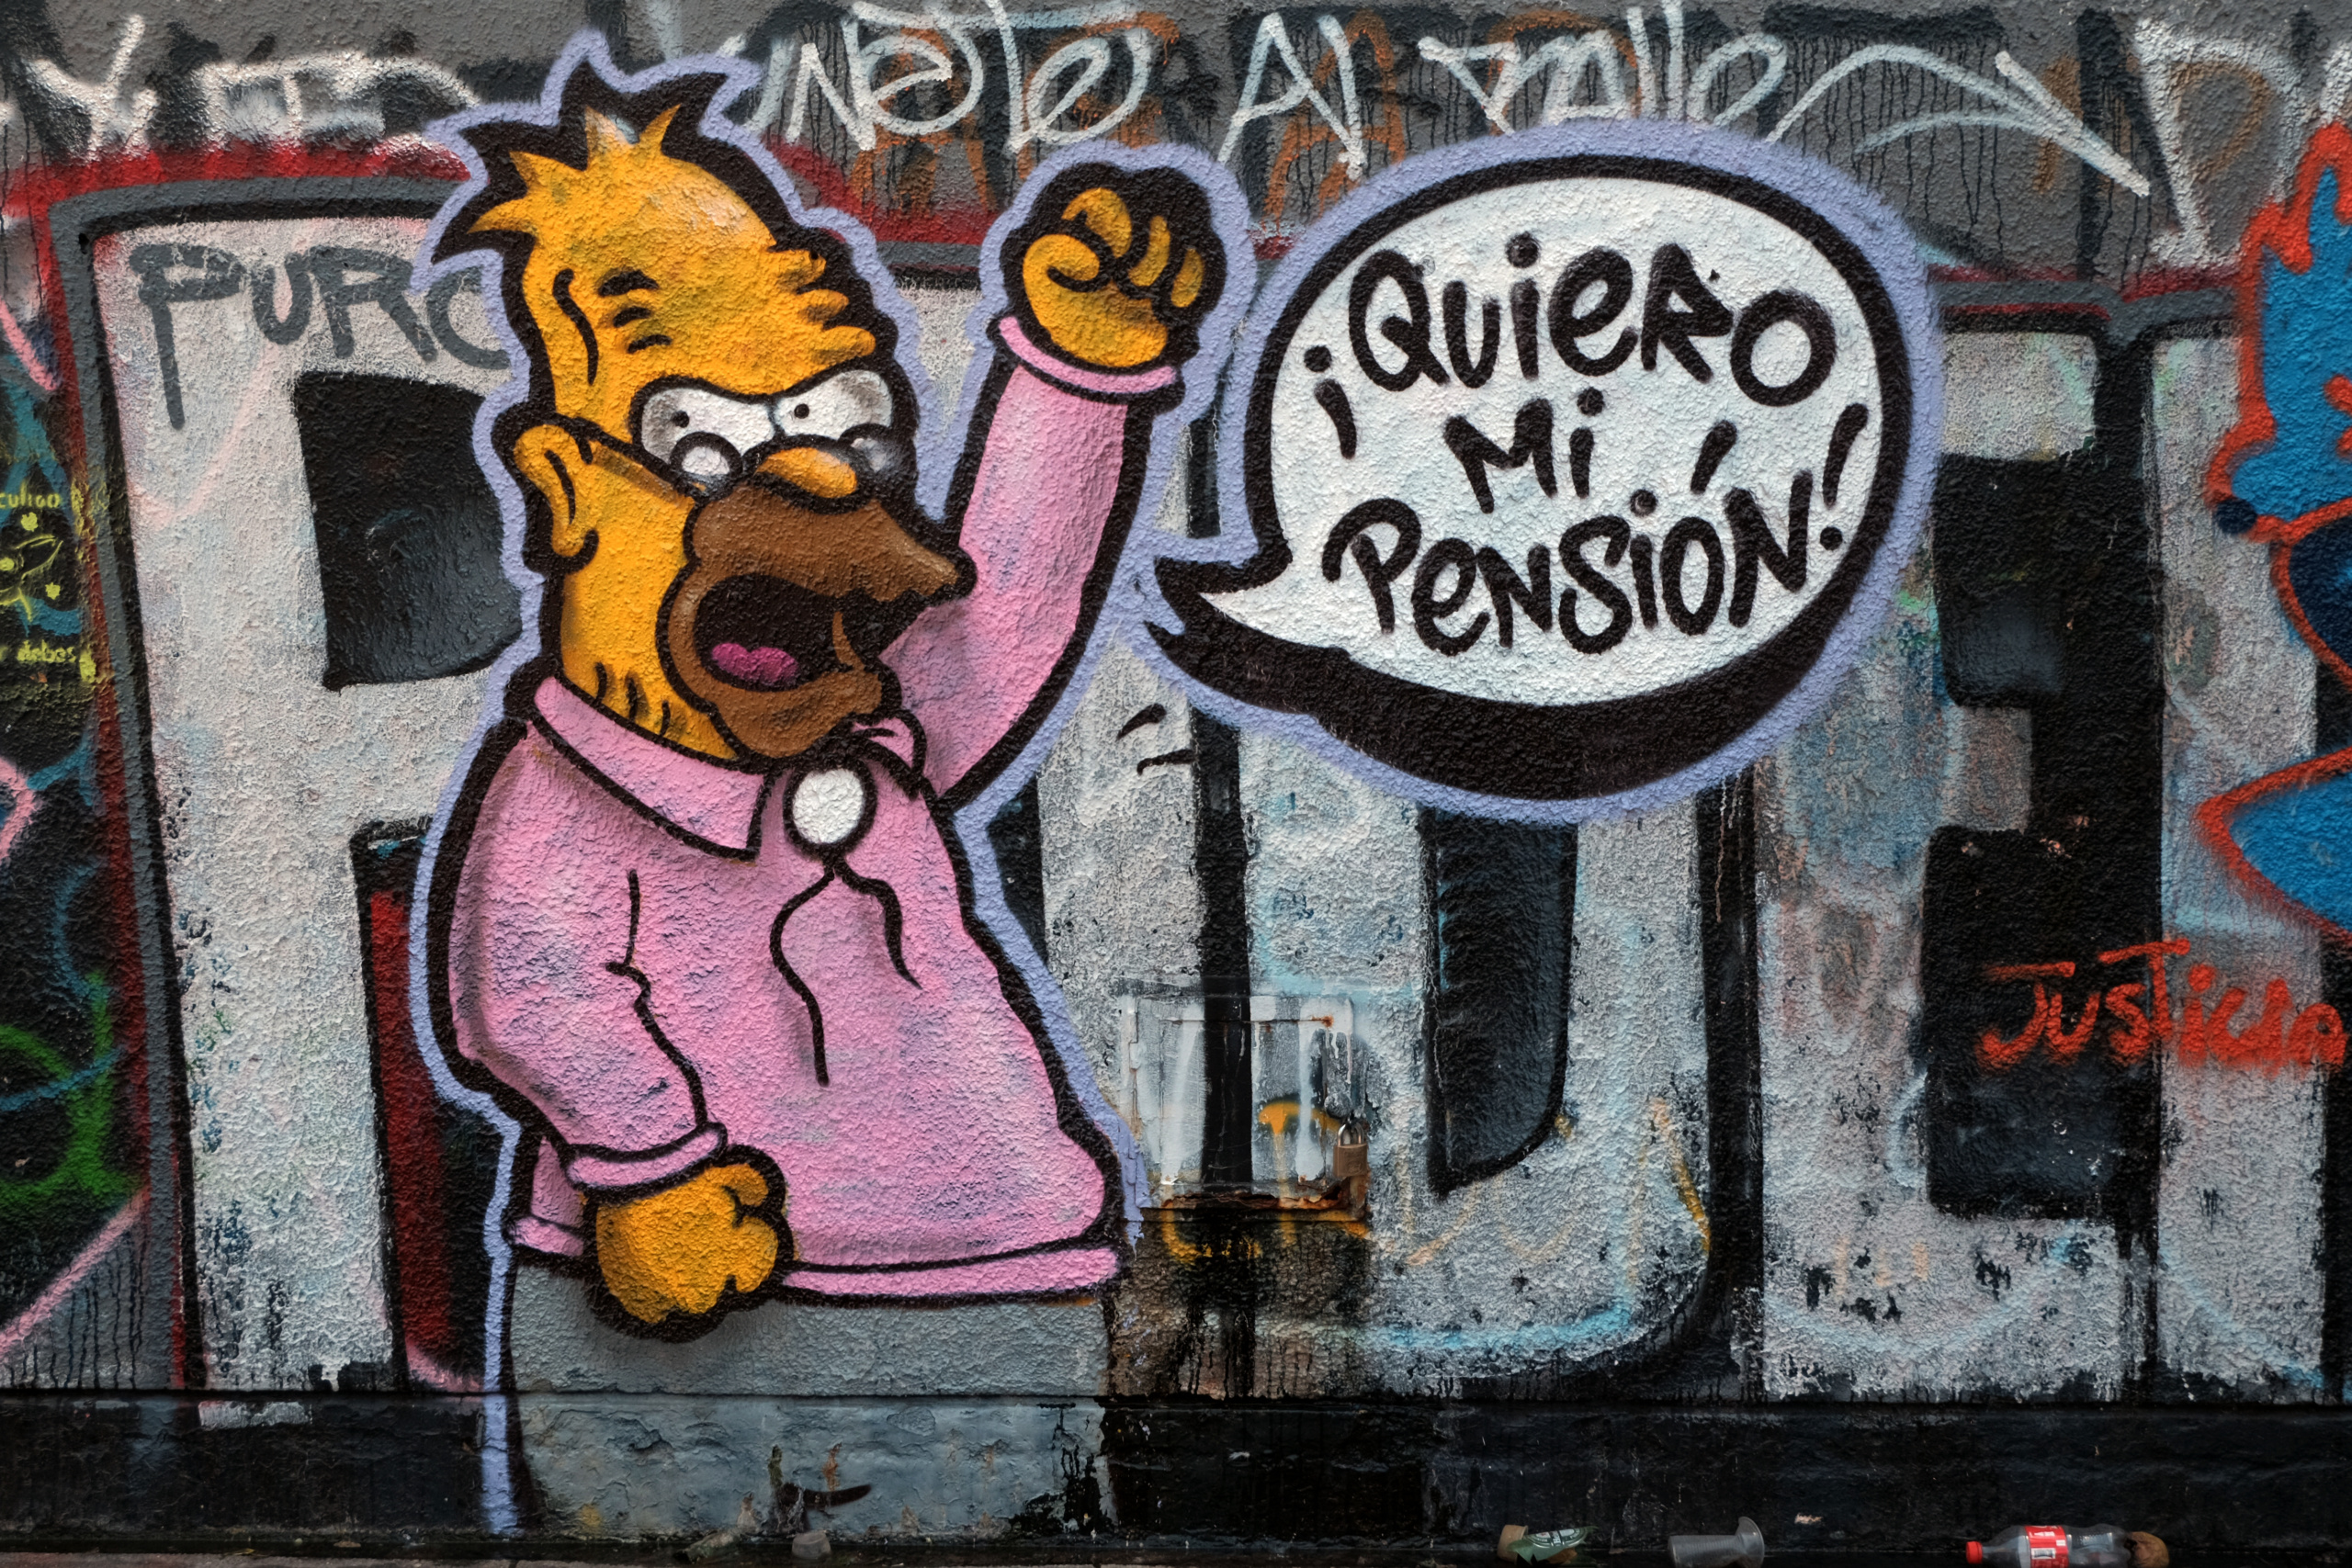 ¡Quiero mi pension! © Luis Bustamente